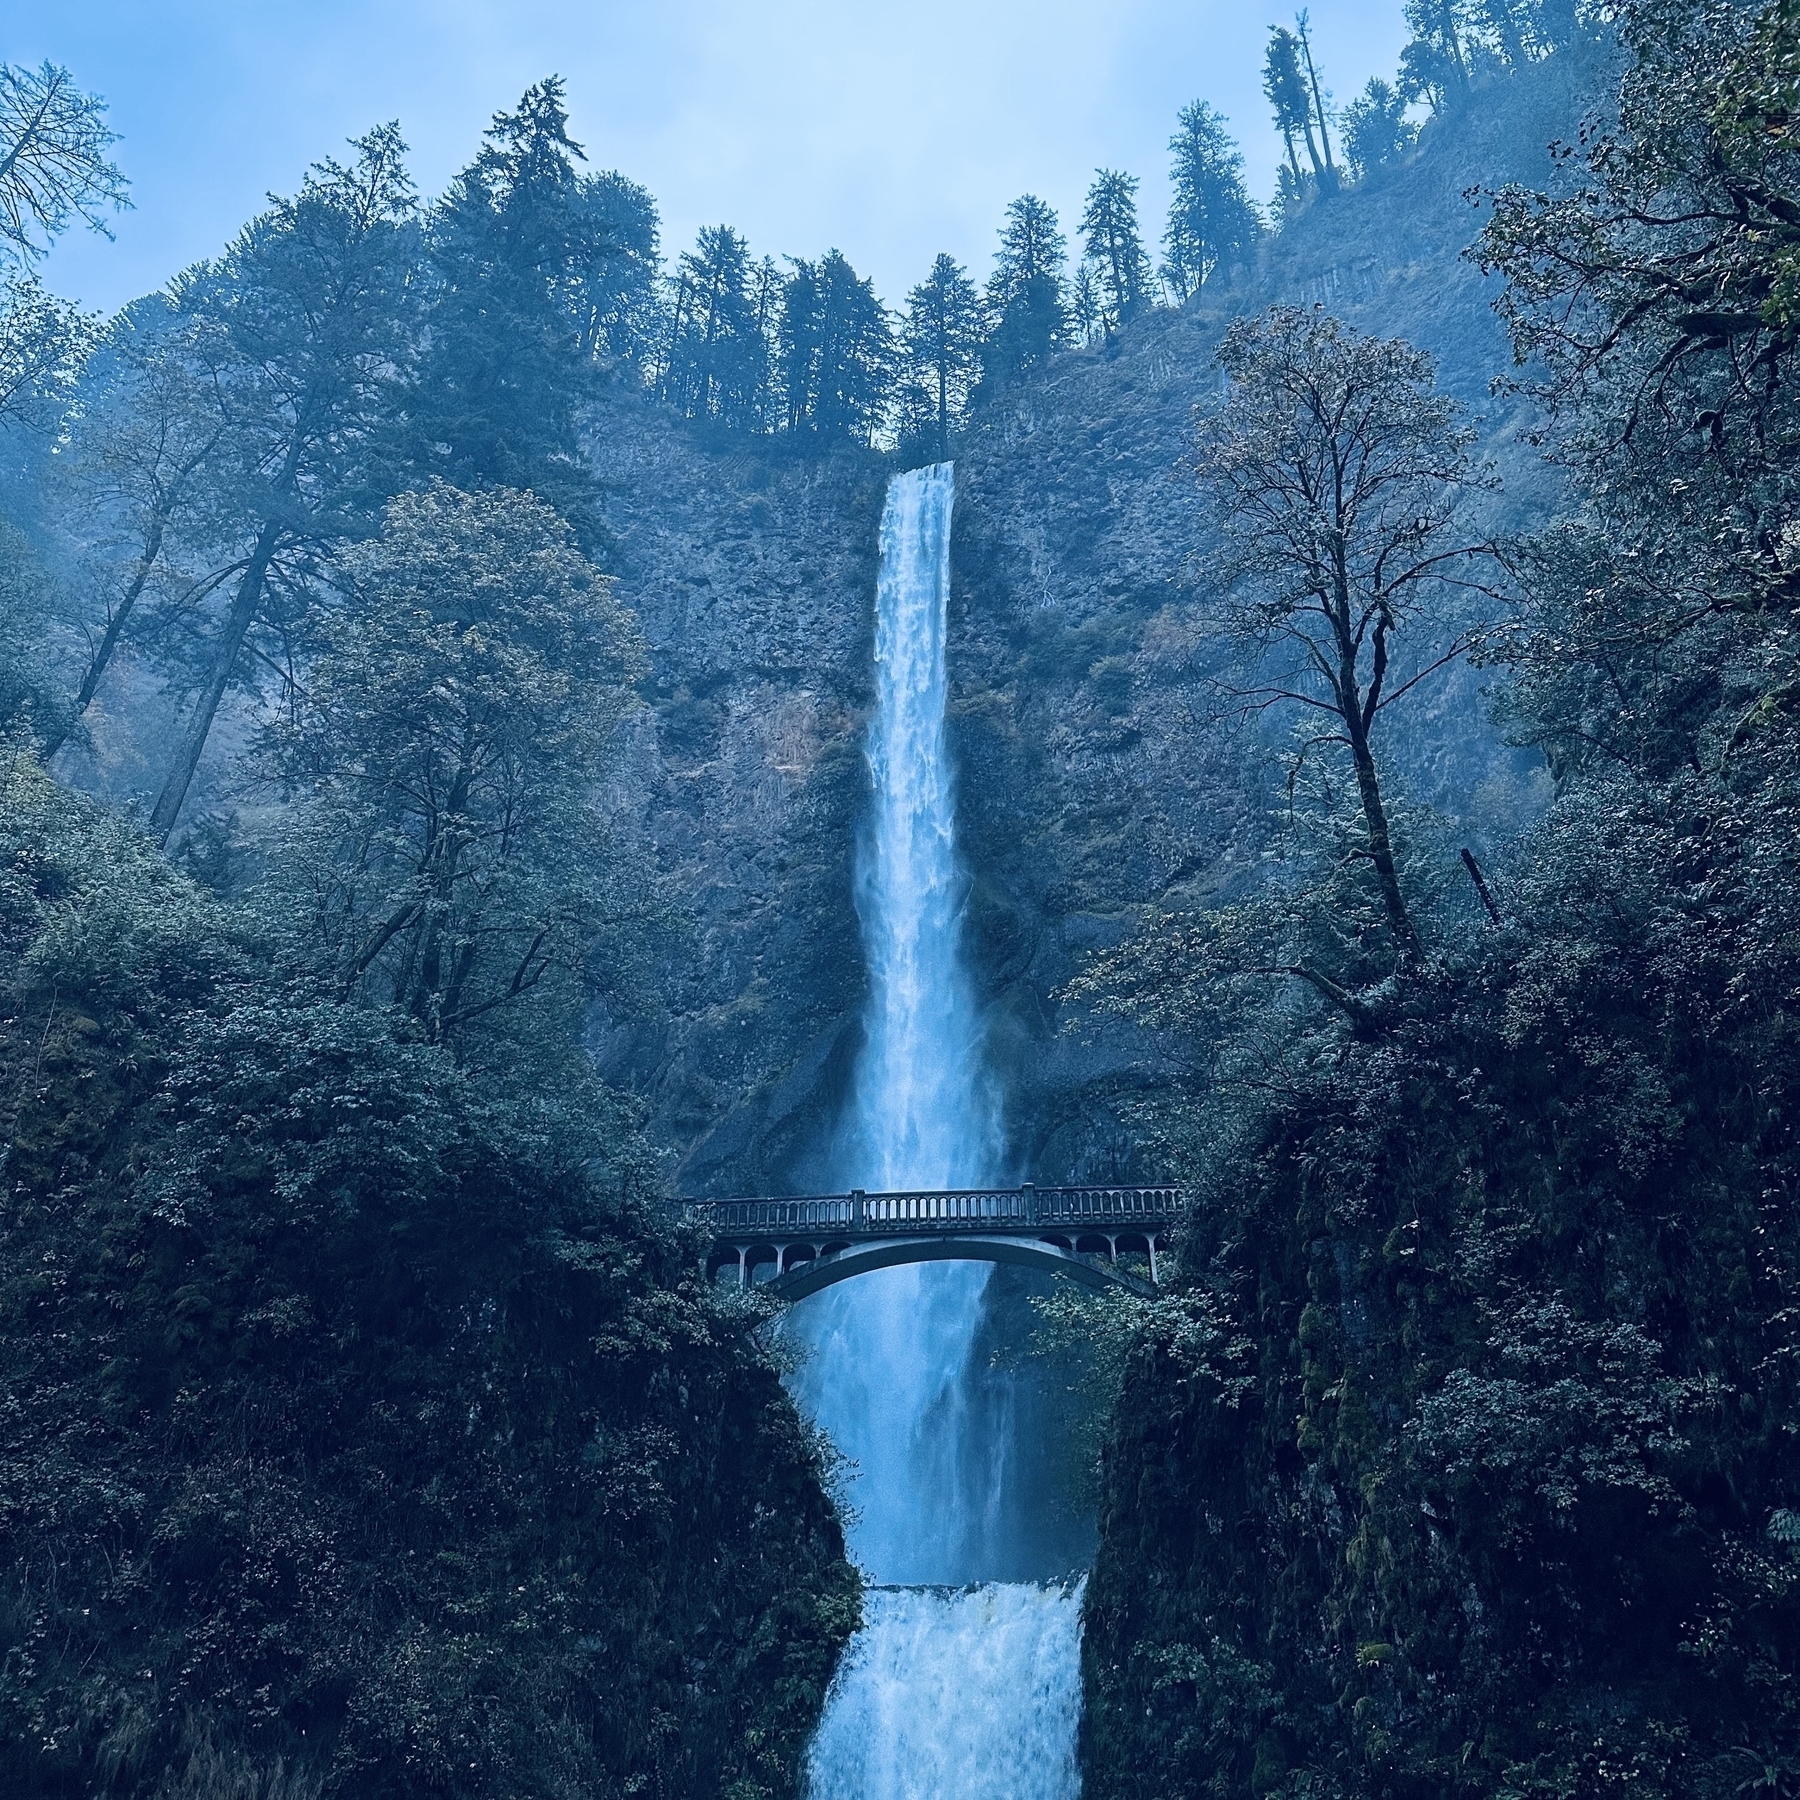 Waterfall in Oregon.